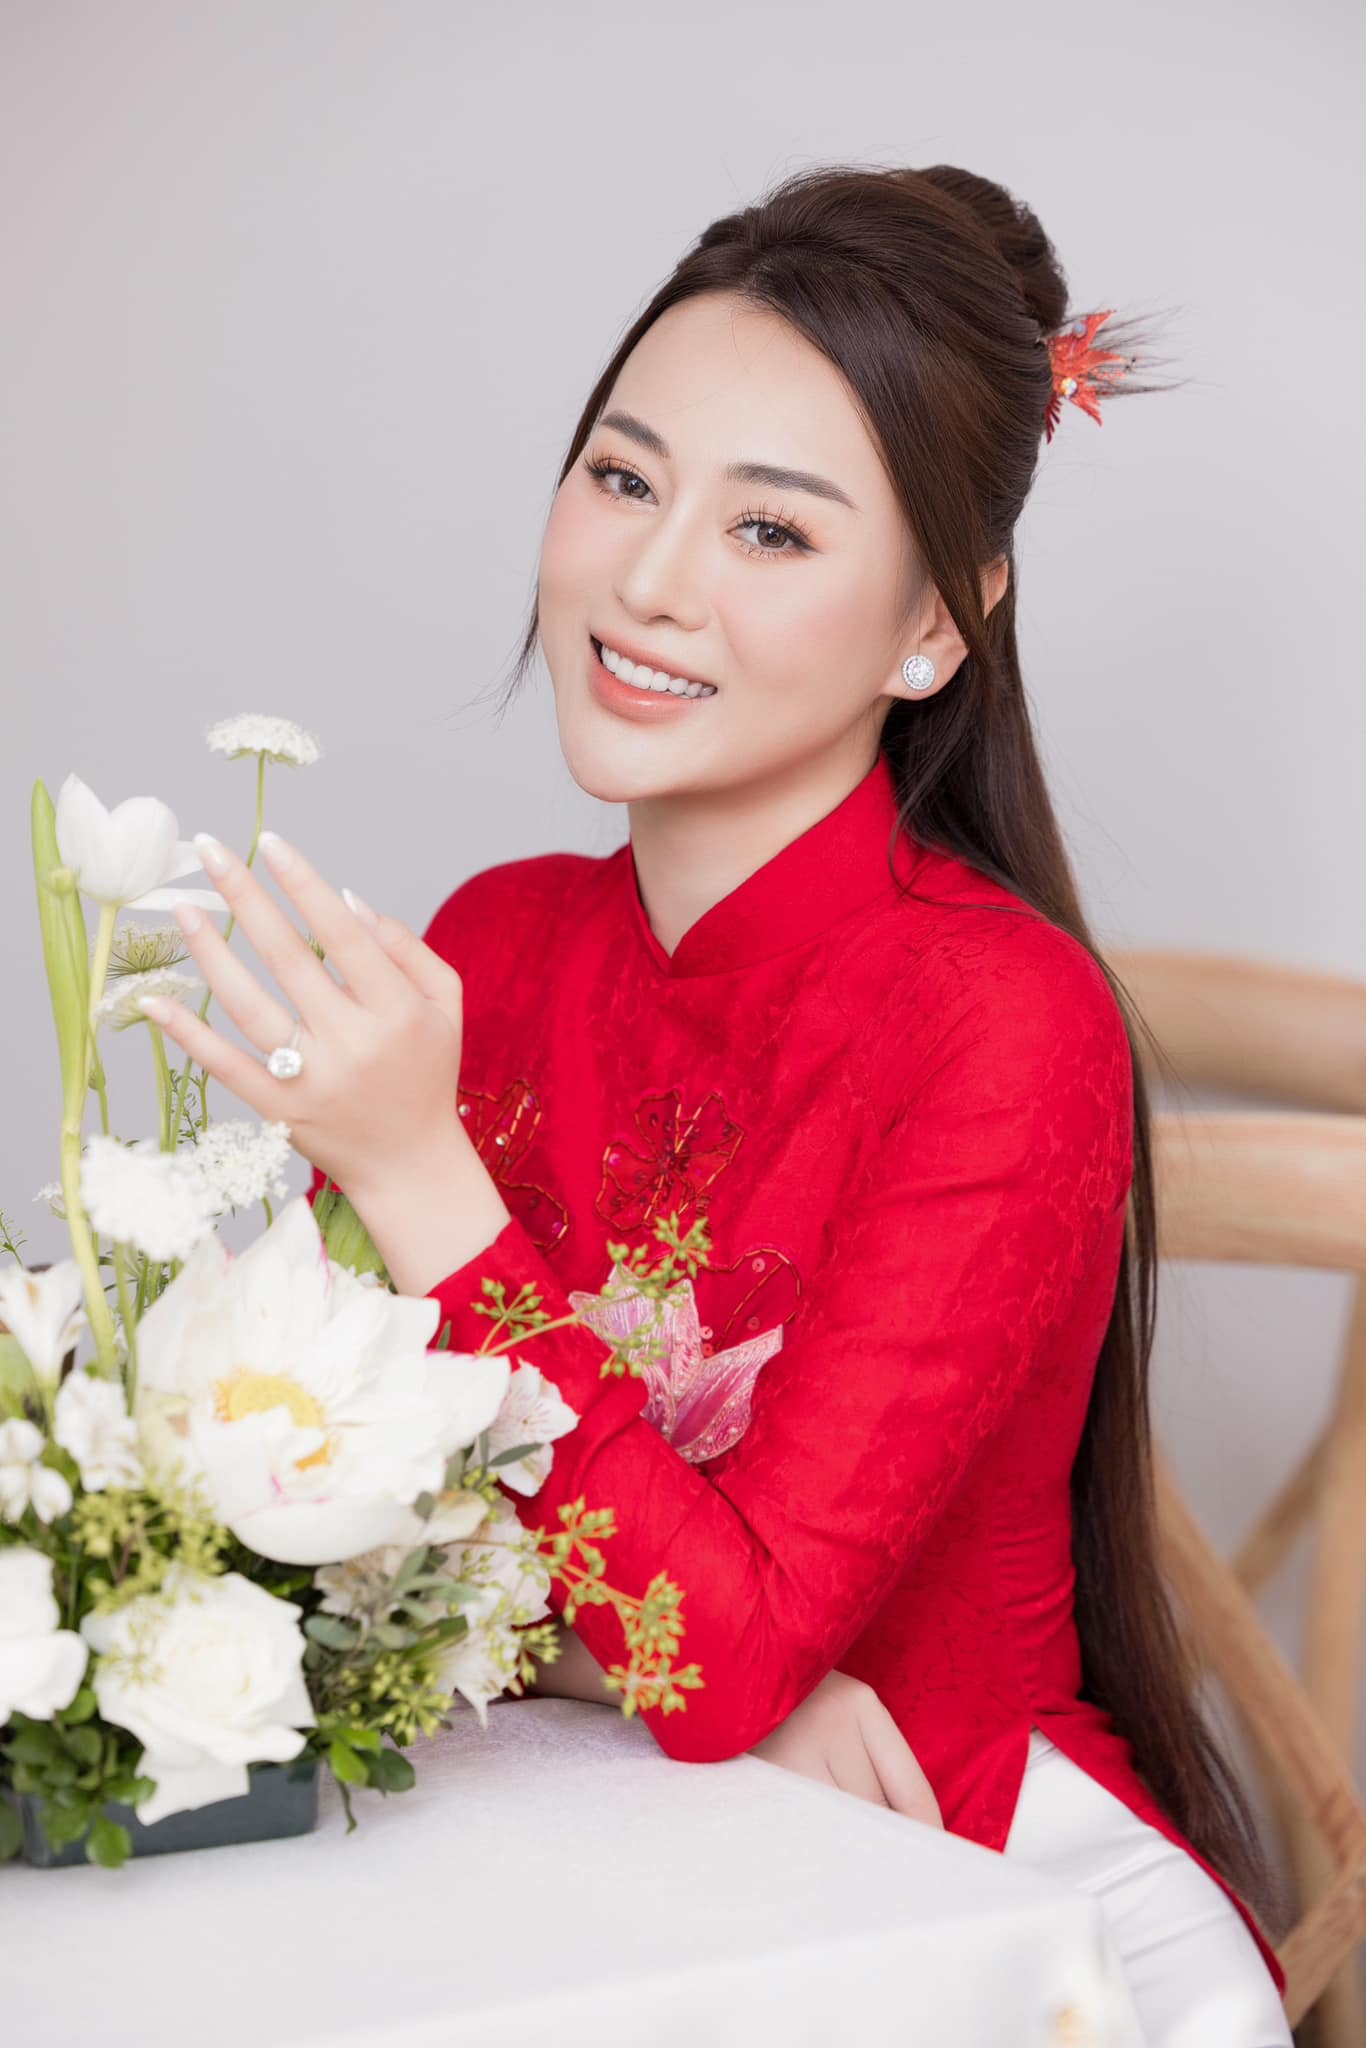 Nữ diễn viên Quỳnh búp bê rạng rỡ trong lễ ăn hỏi được chuẩn bị kỹ lưỡng. Ảnh: Facebook Ngọc Hân